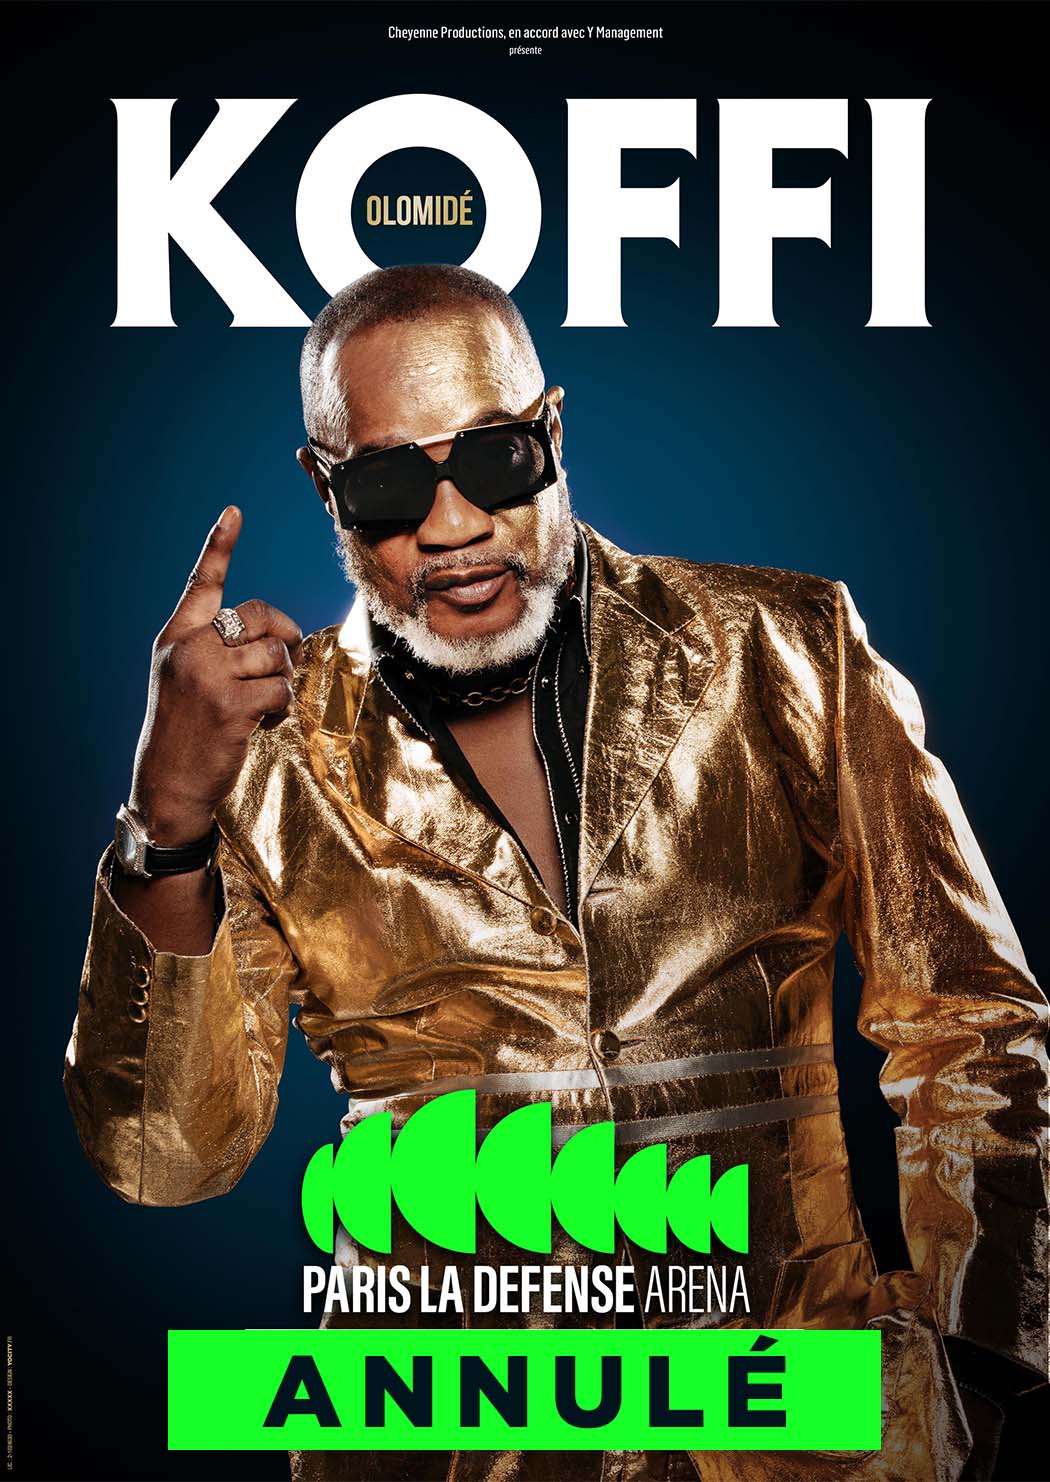 Le concert de Koffi Olomide à Paris La Défense Arena n’aura pas lieu (DR)